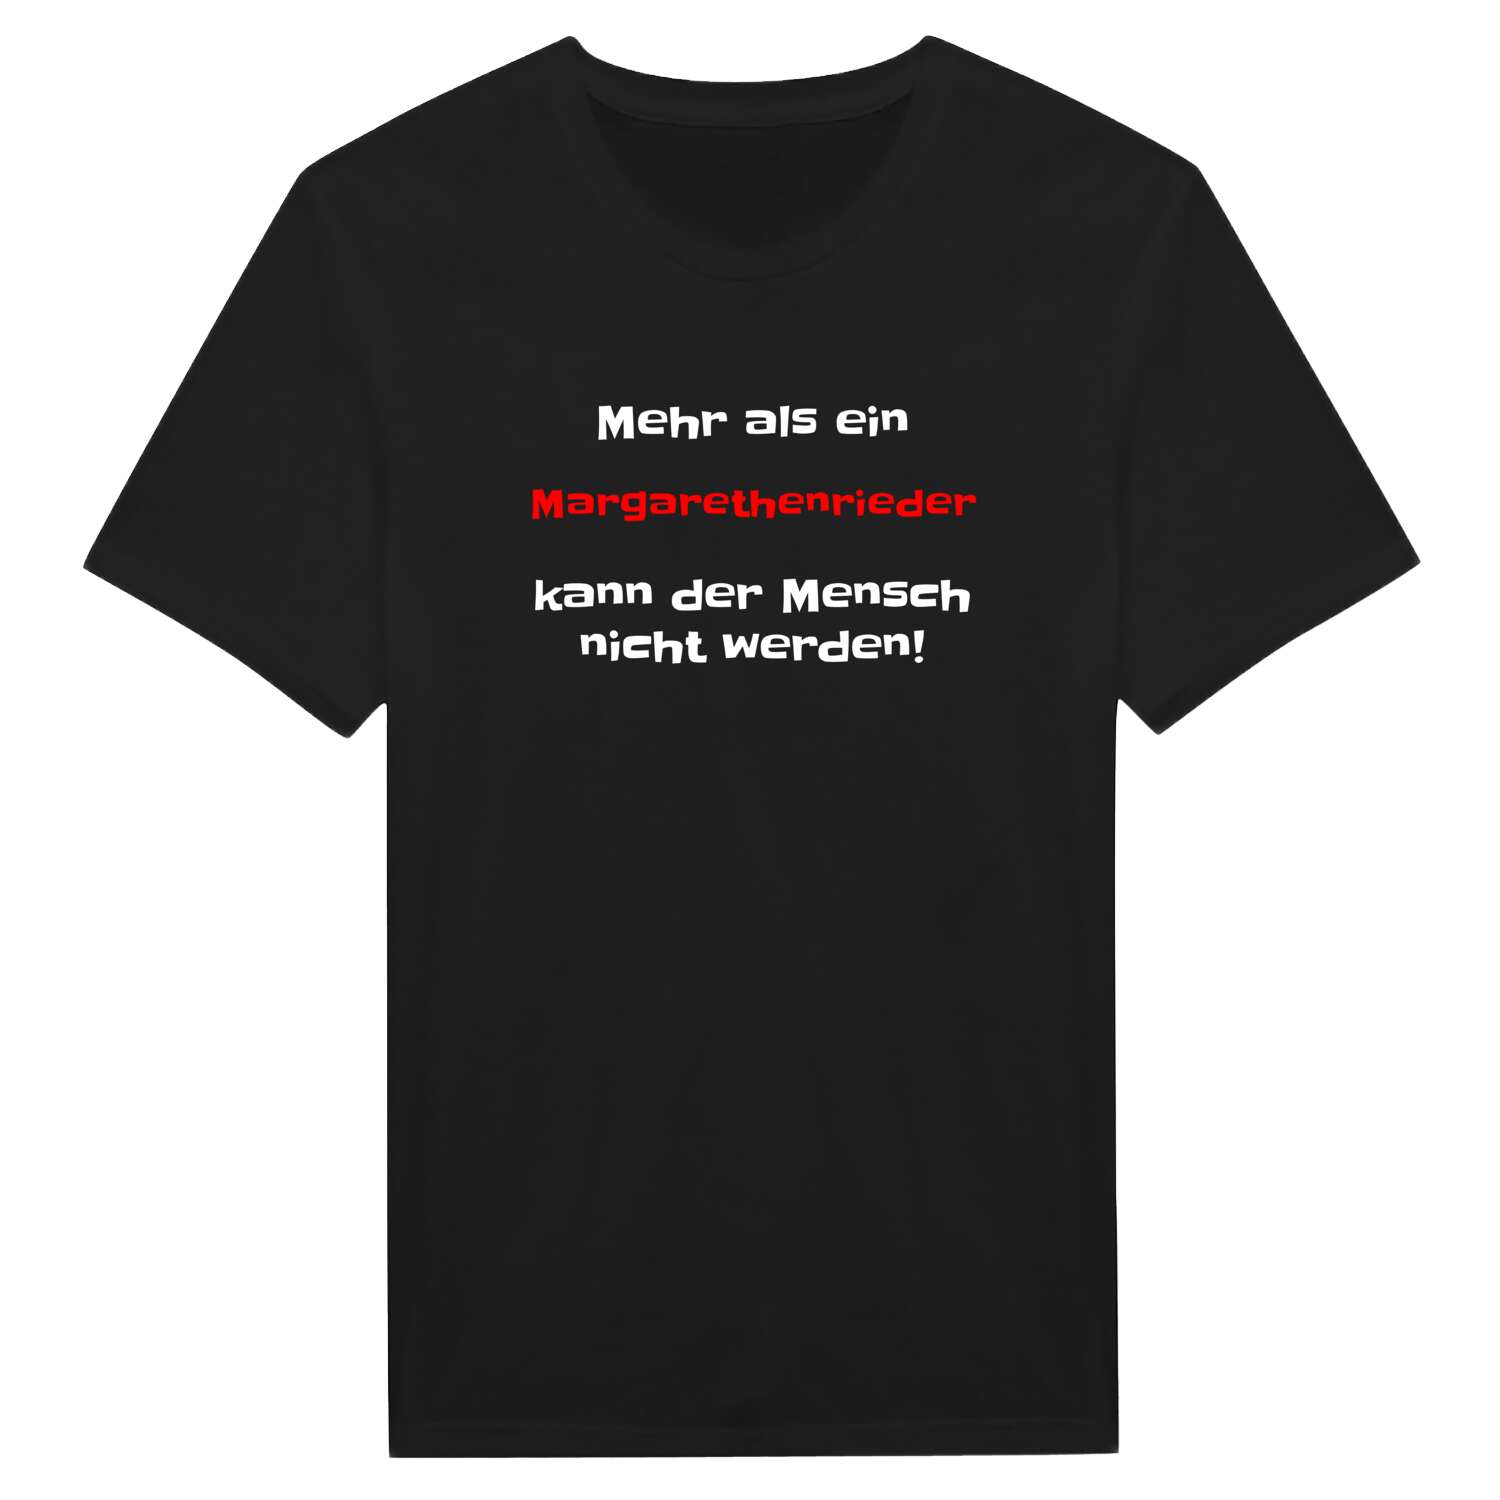 Margarethenried T-Shirt »Mehr als ein«